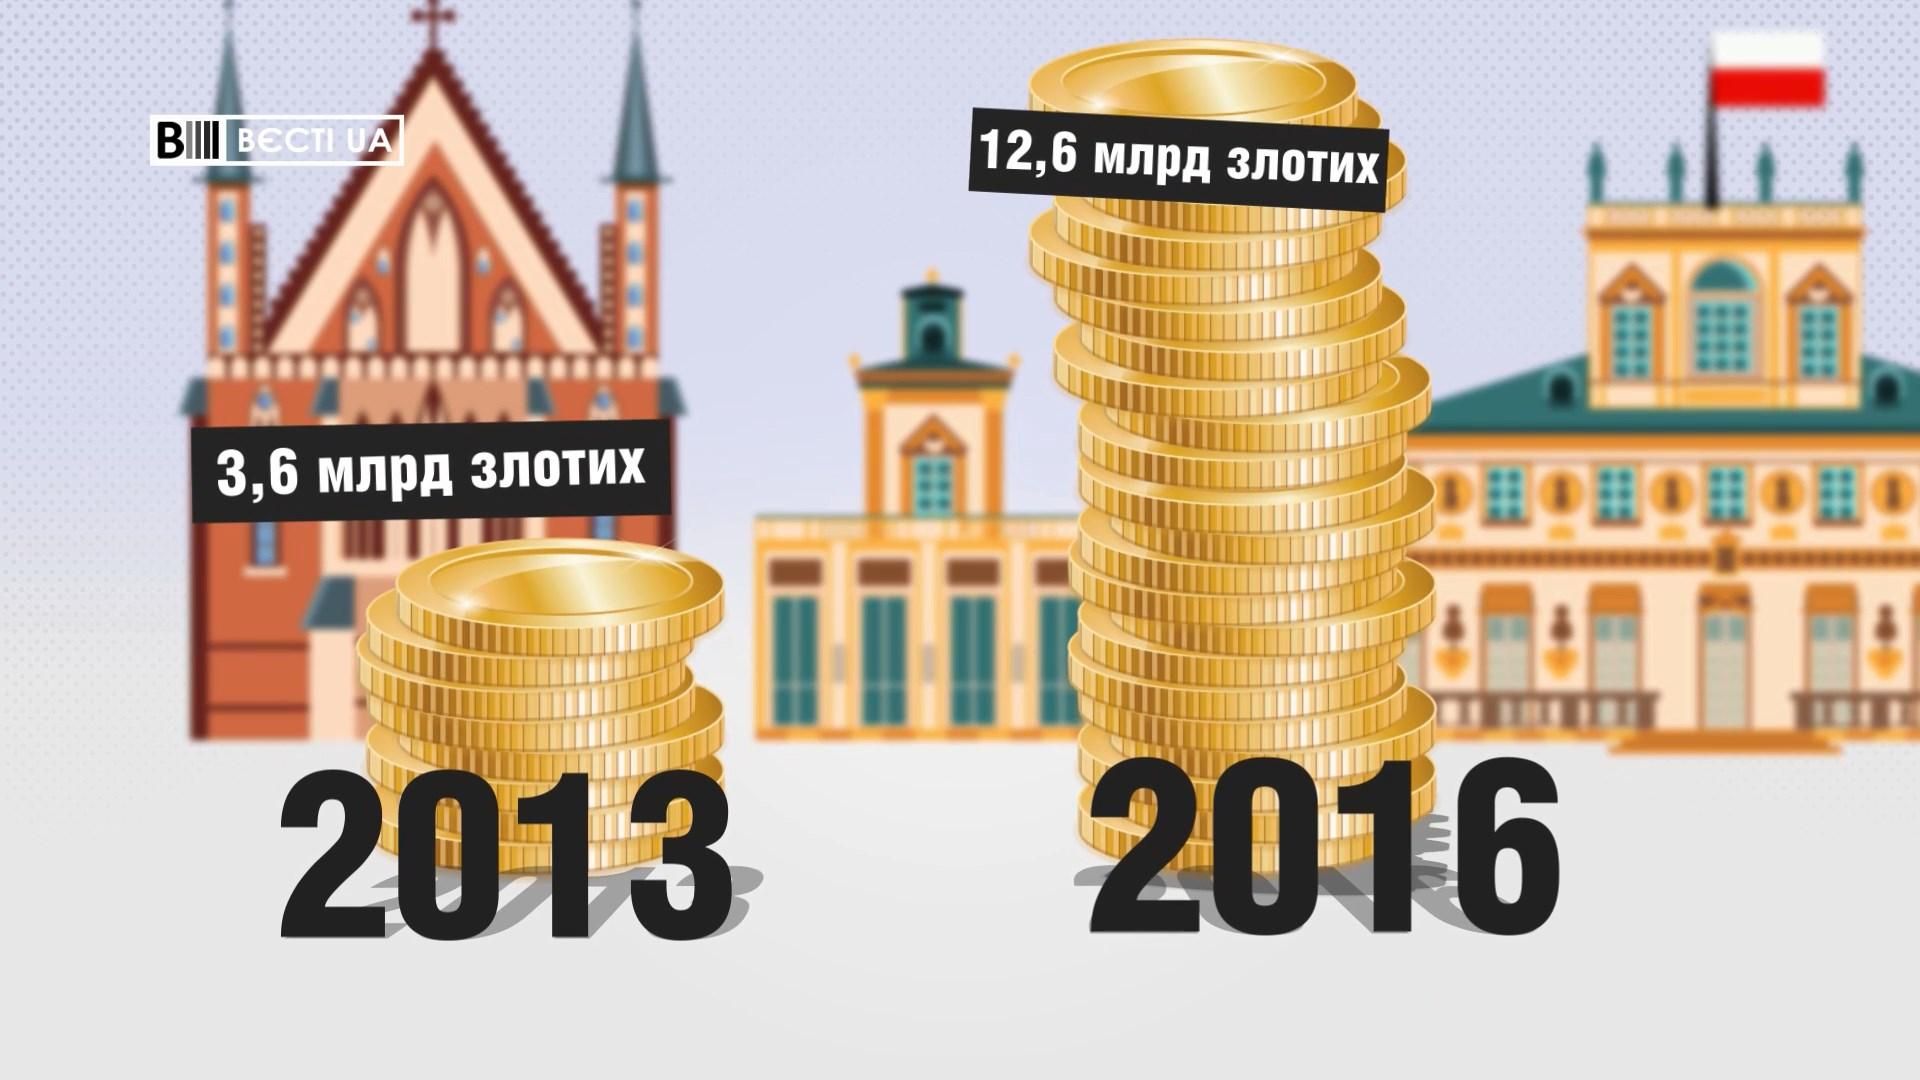 Скільки заробляють українці в Польщі